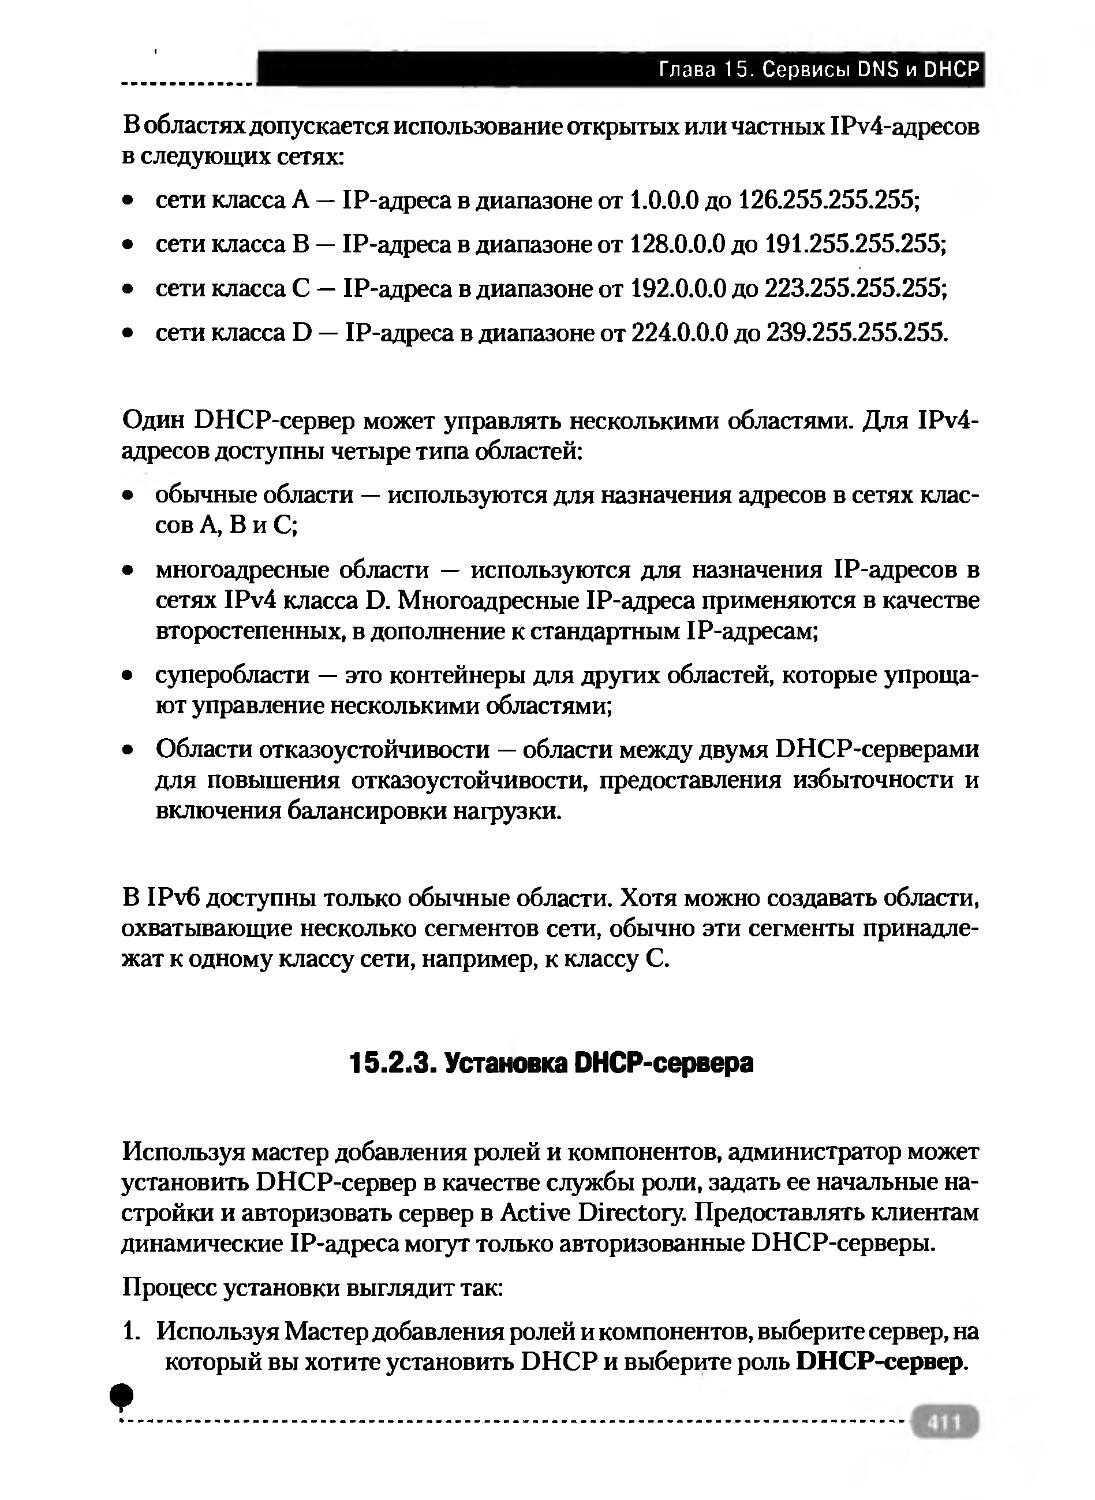 15.2.3. Установка DHCP-сервера